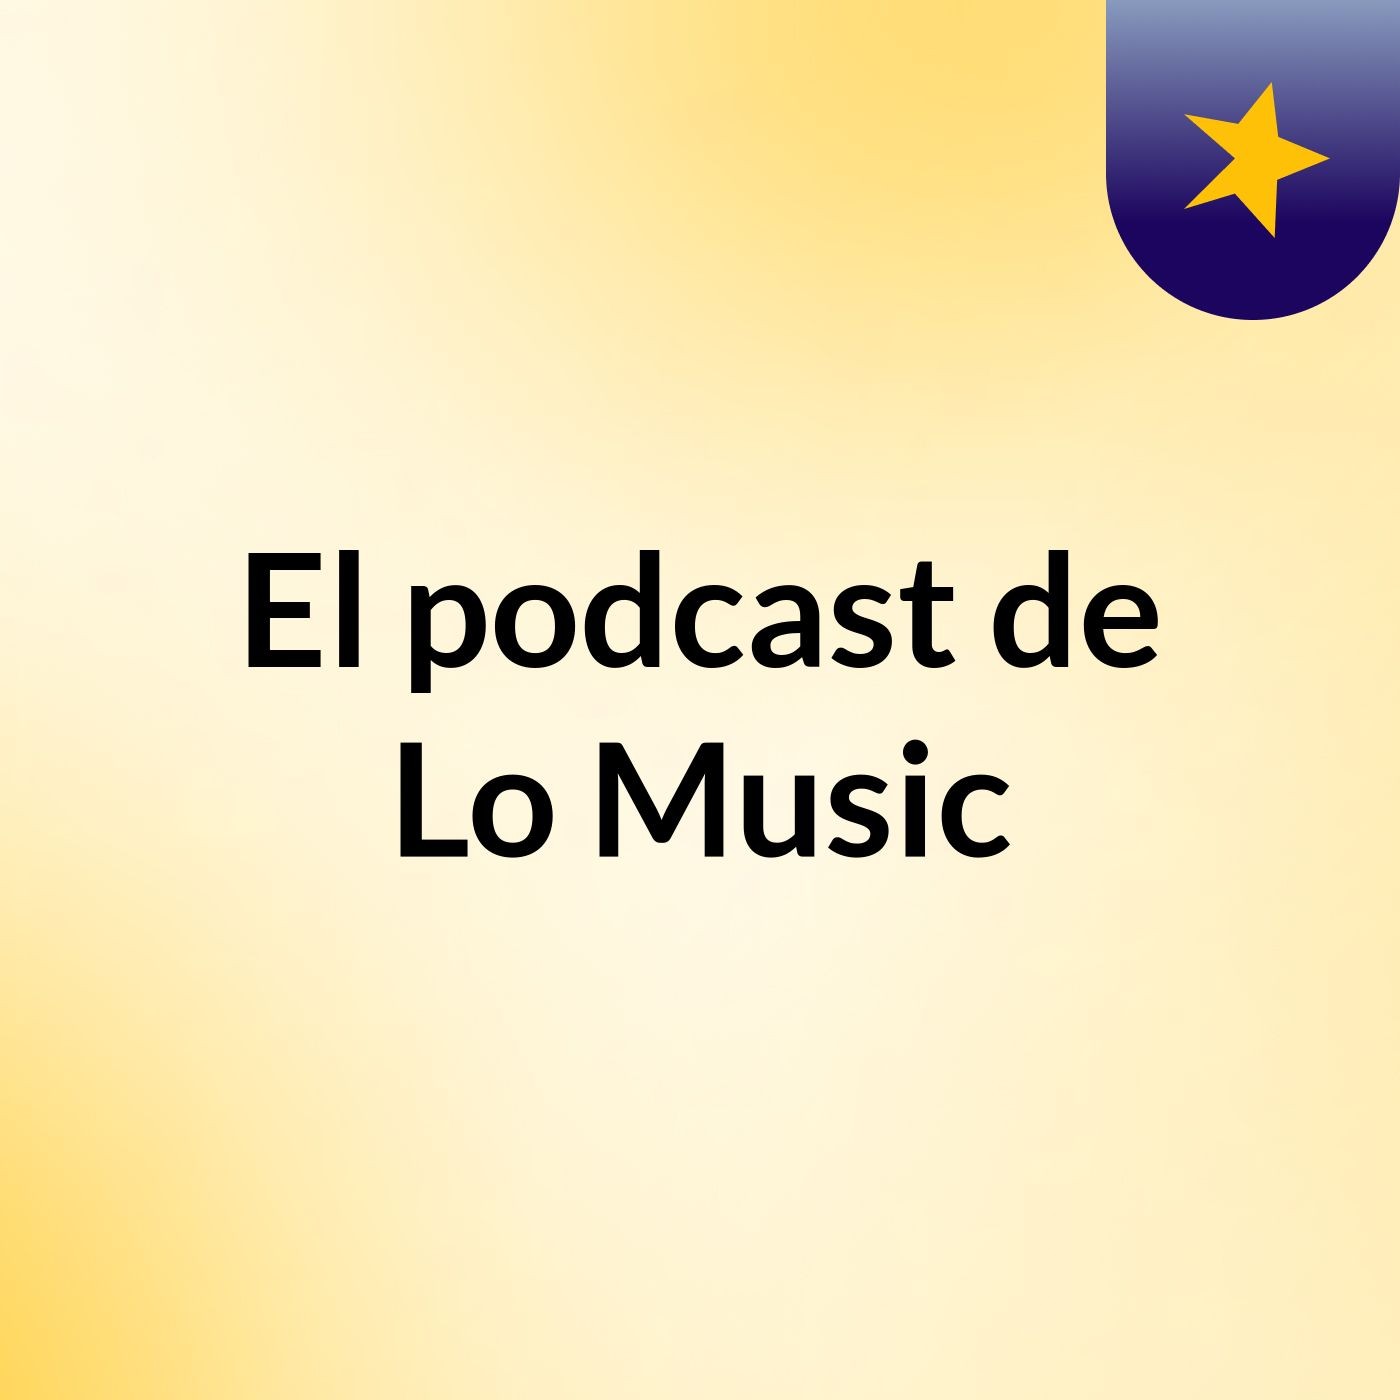 Episodio 6 - El podcast de Lo Music